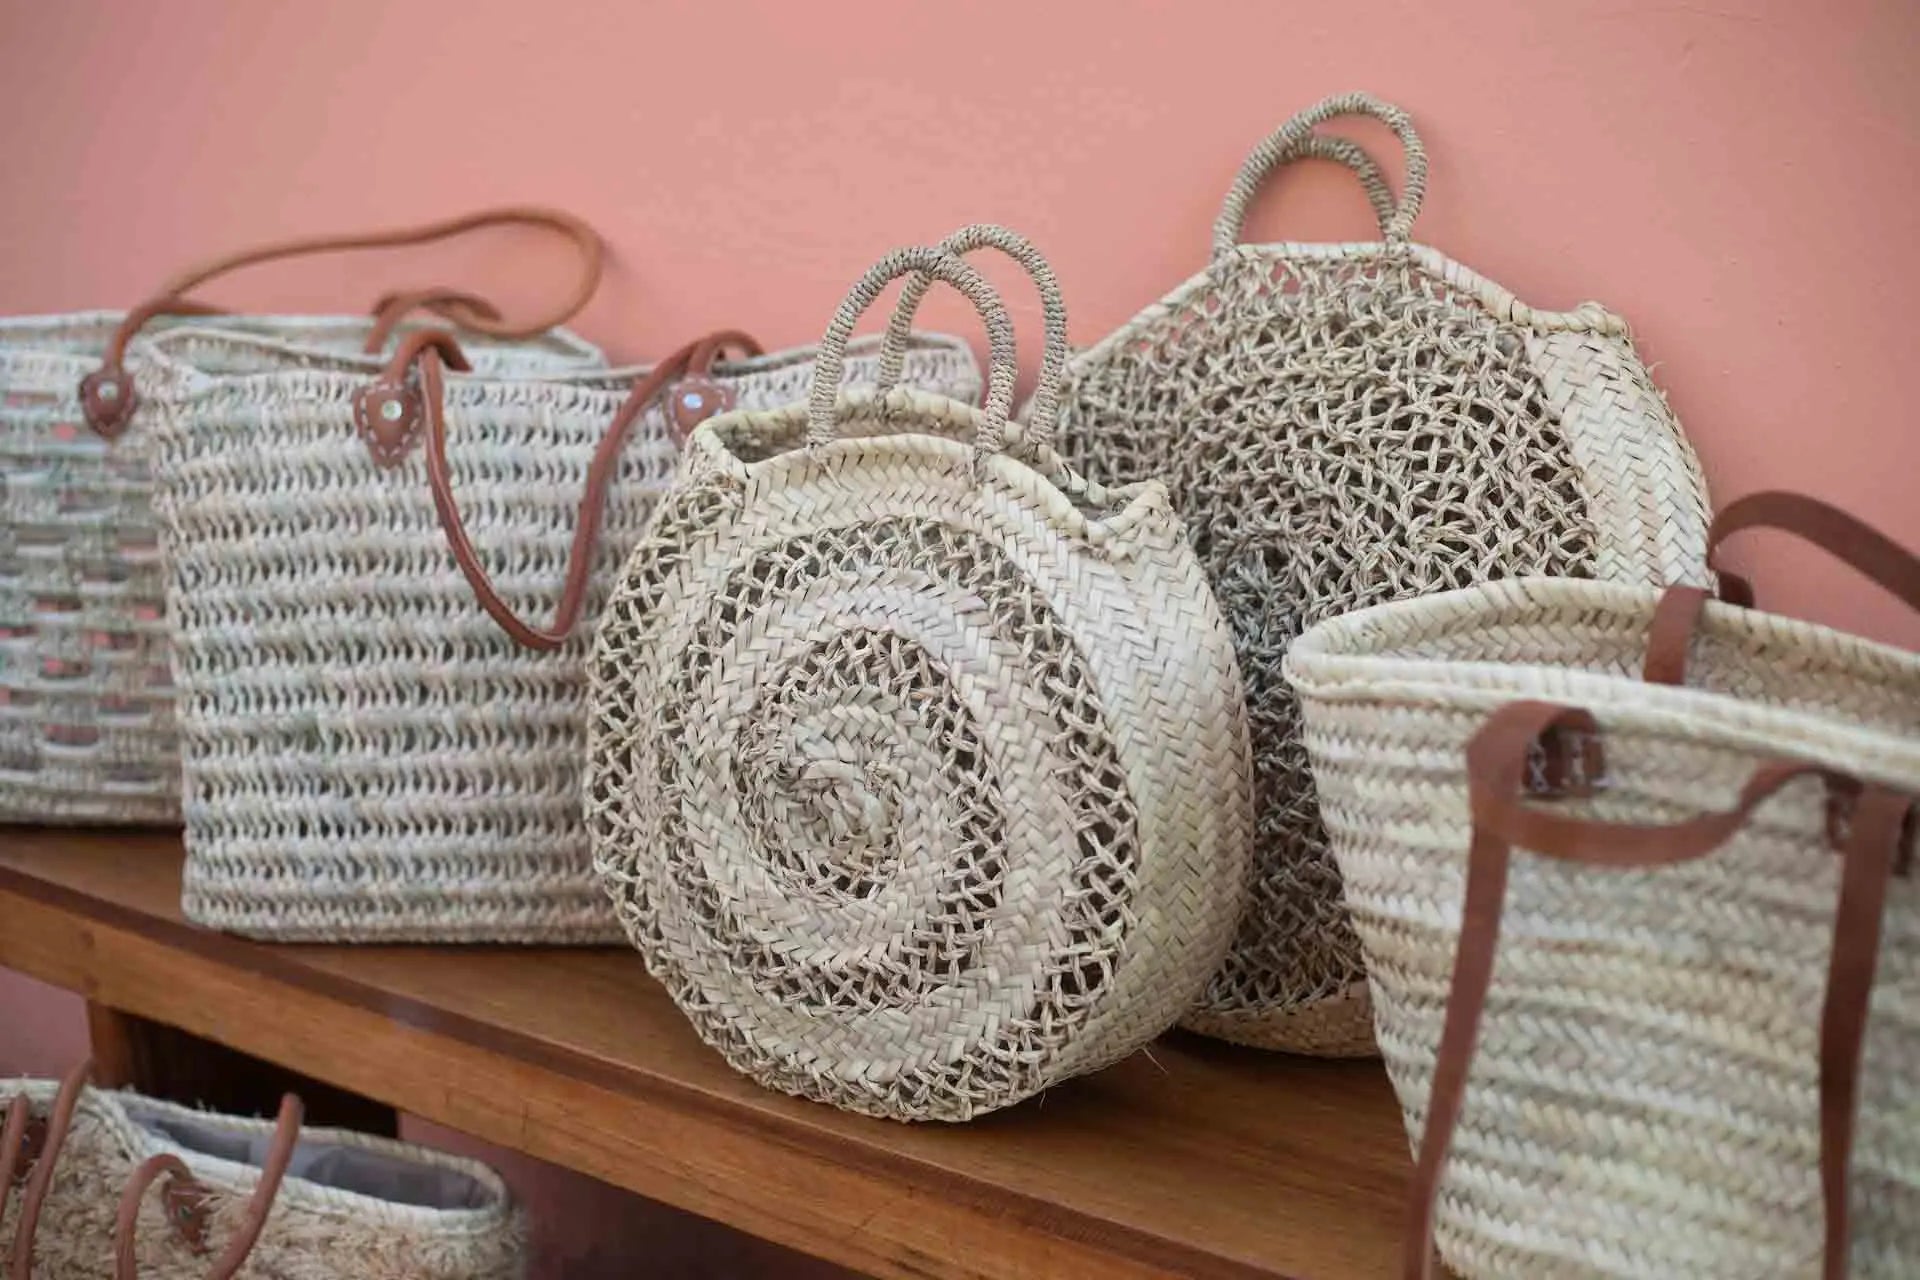 Market Baskets - Handmade in Morocco - Nouvelle Nomad